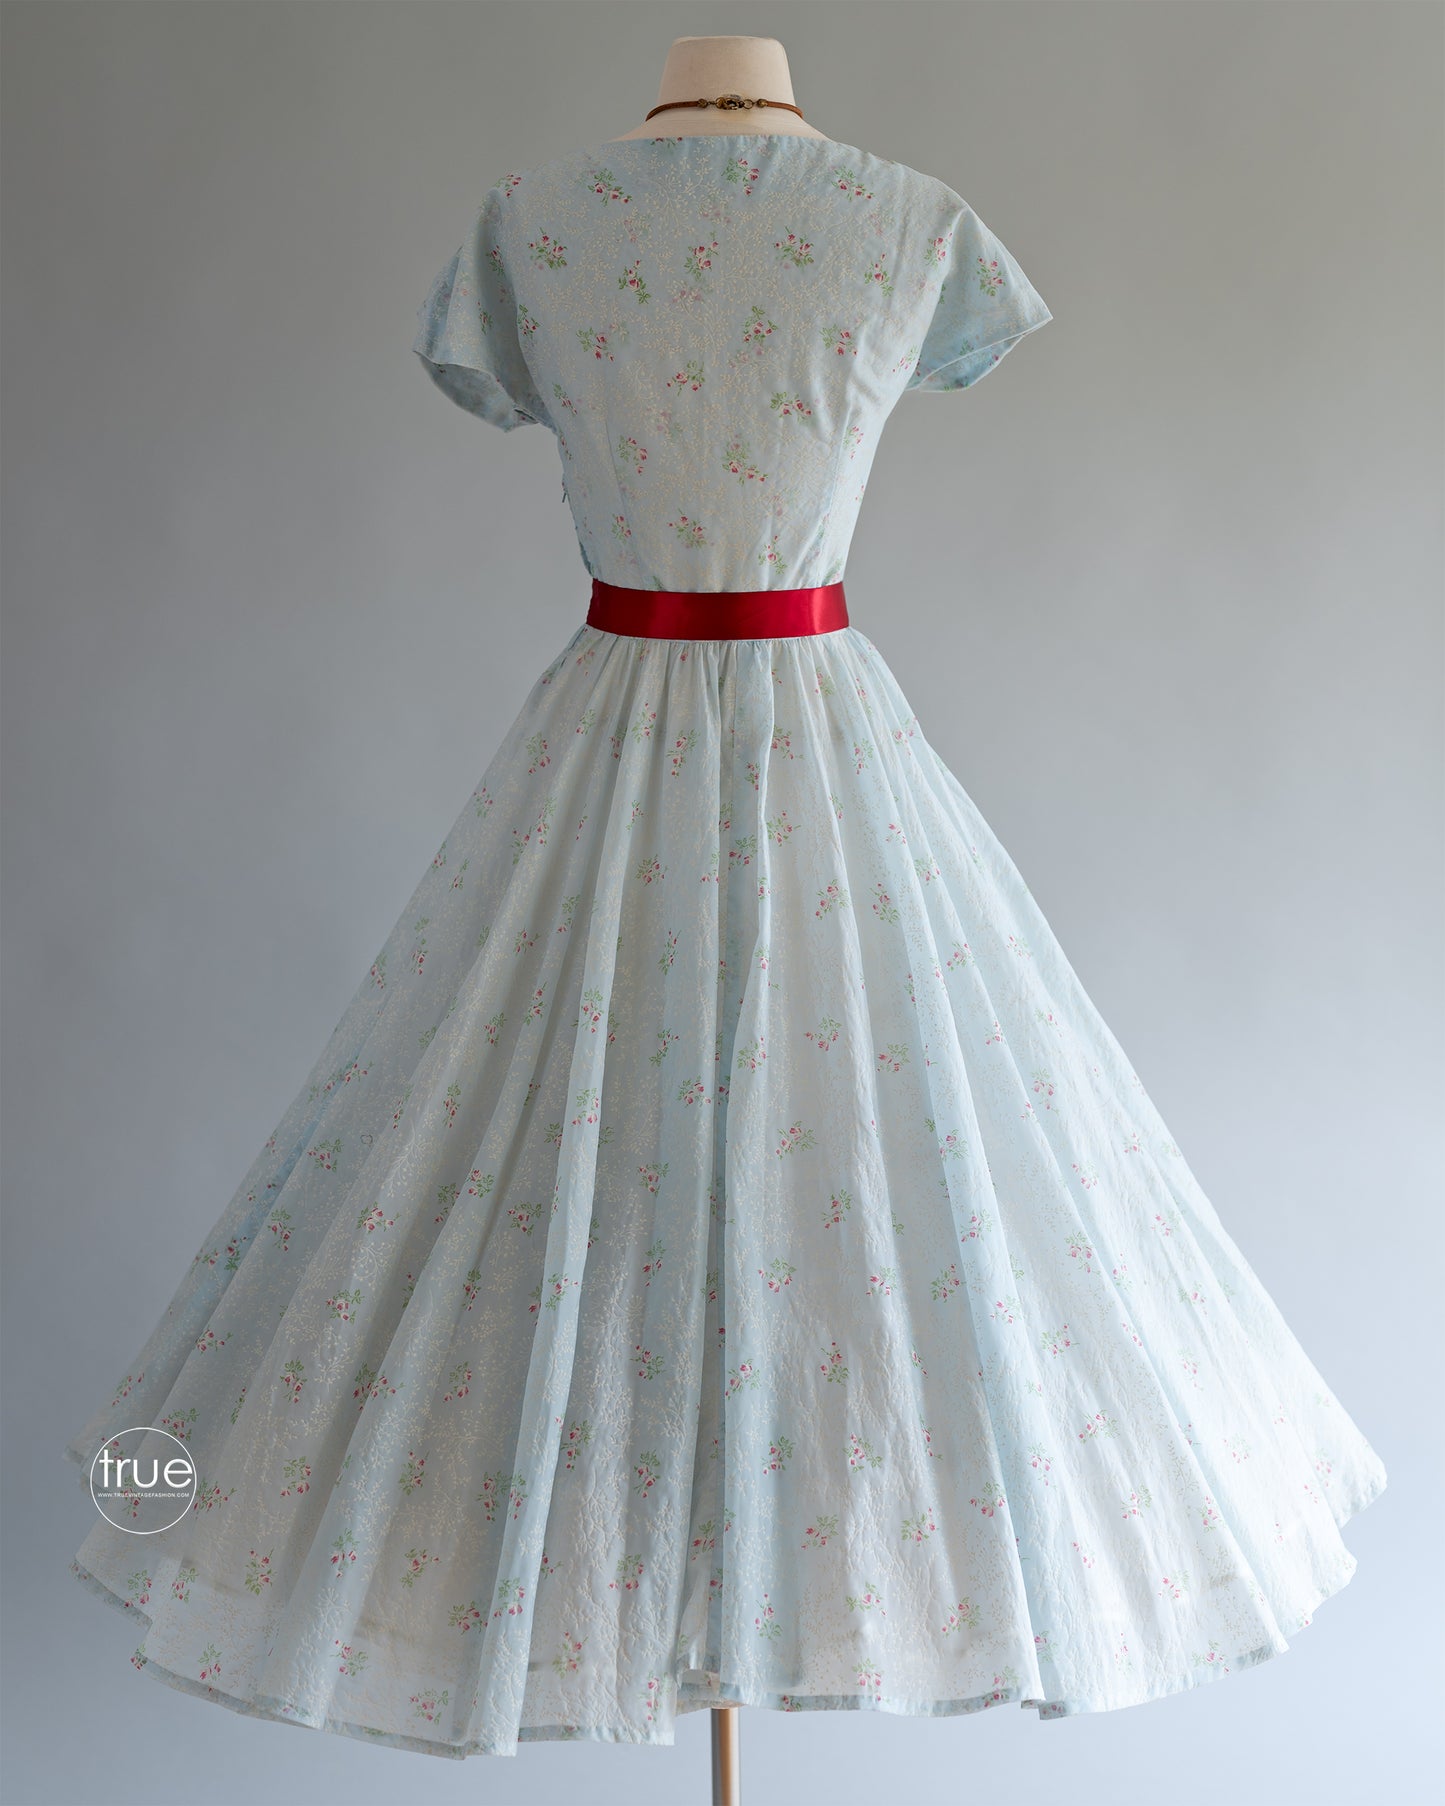 vintage 1940's dress ...pretty light & floaty semi-sheer floral full skirt dress